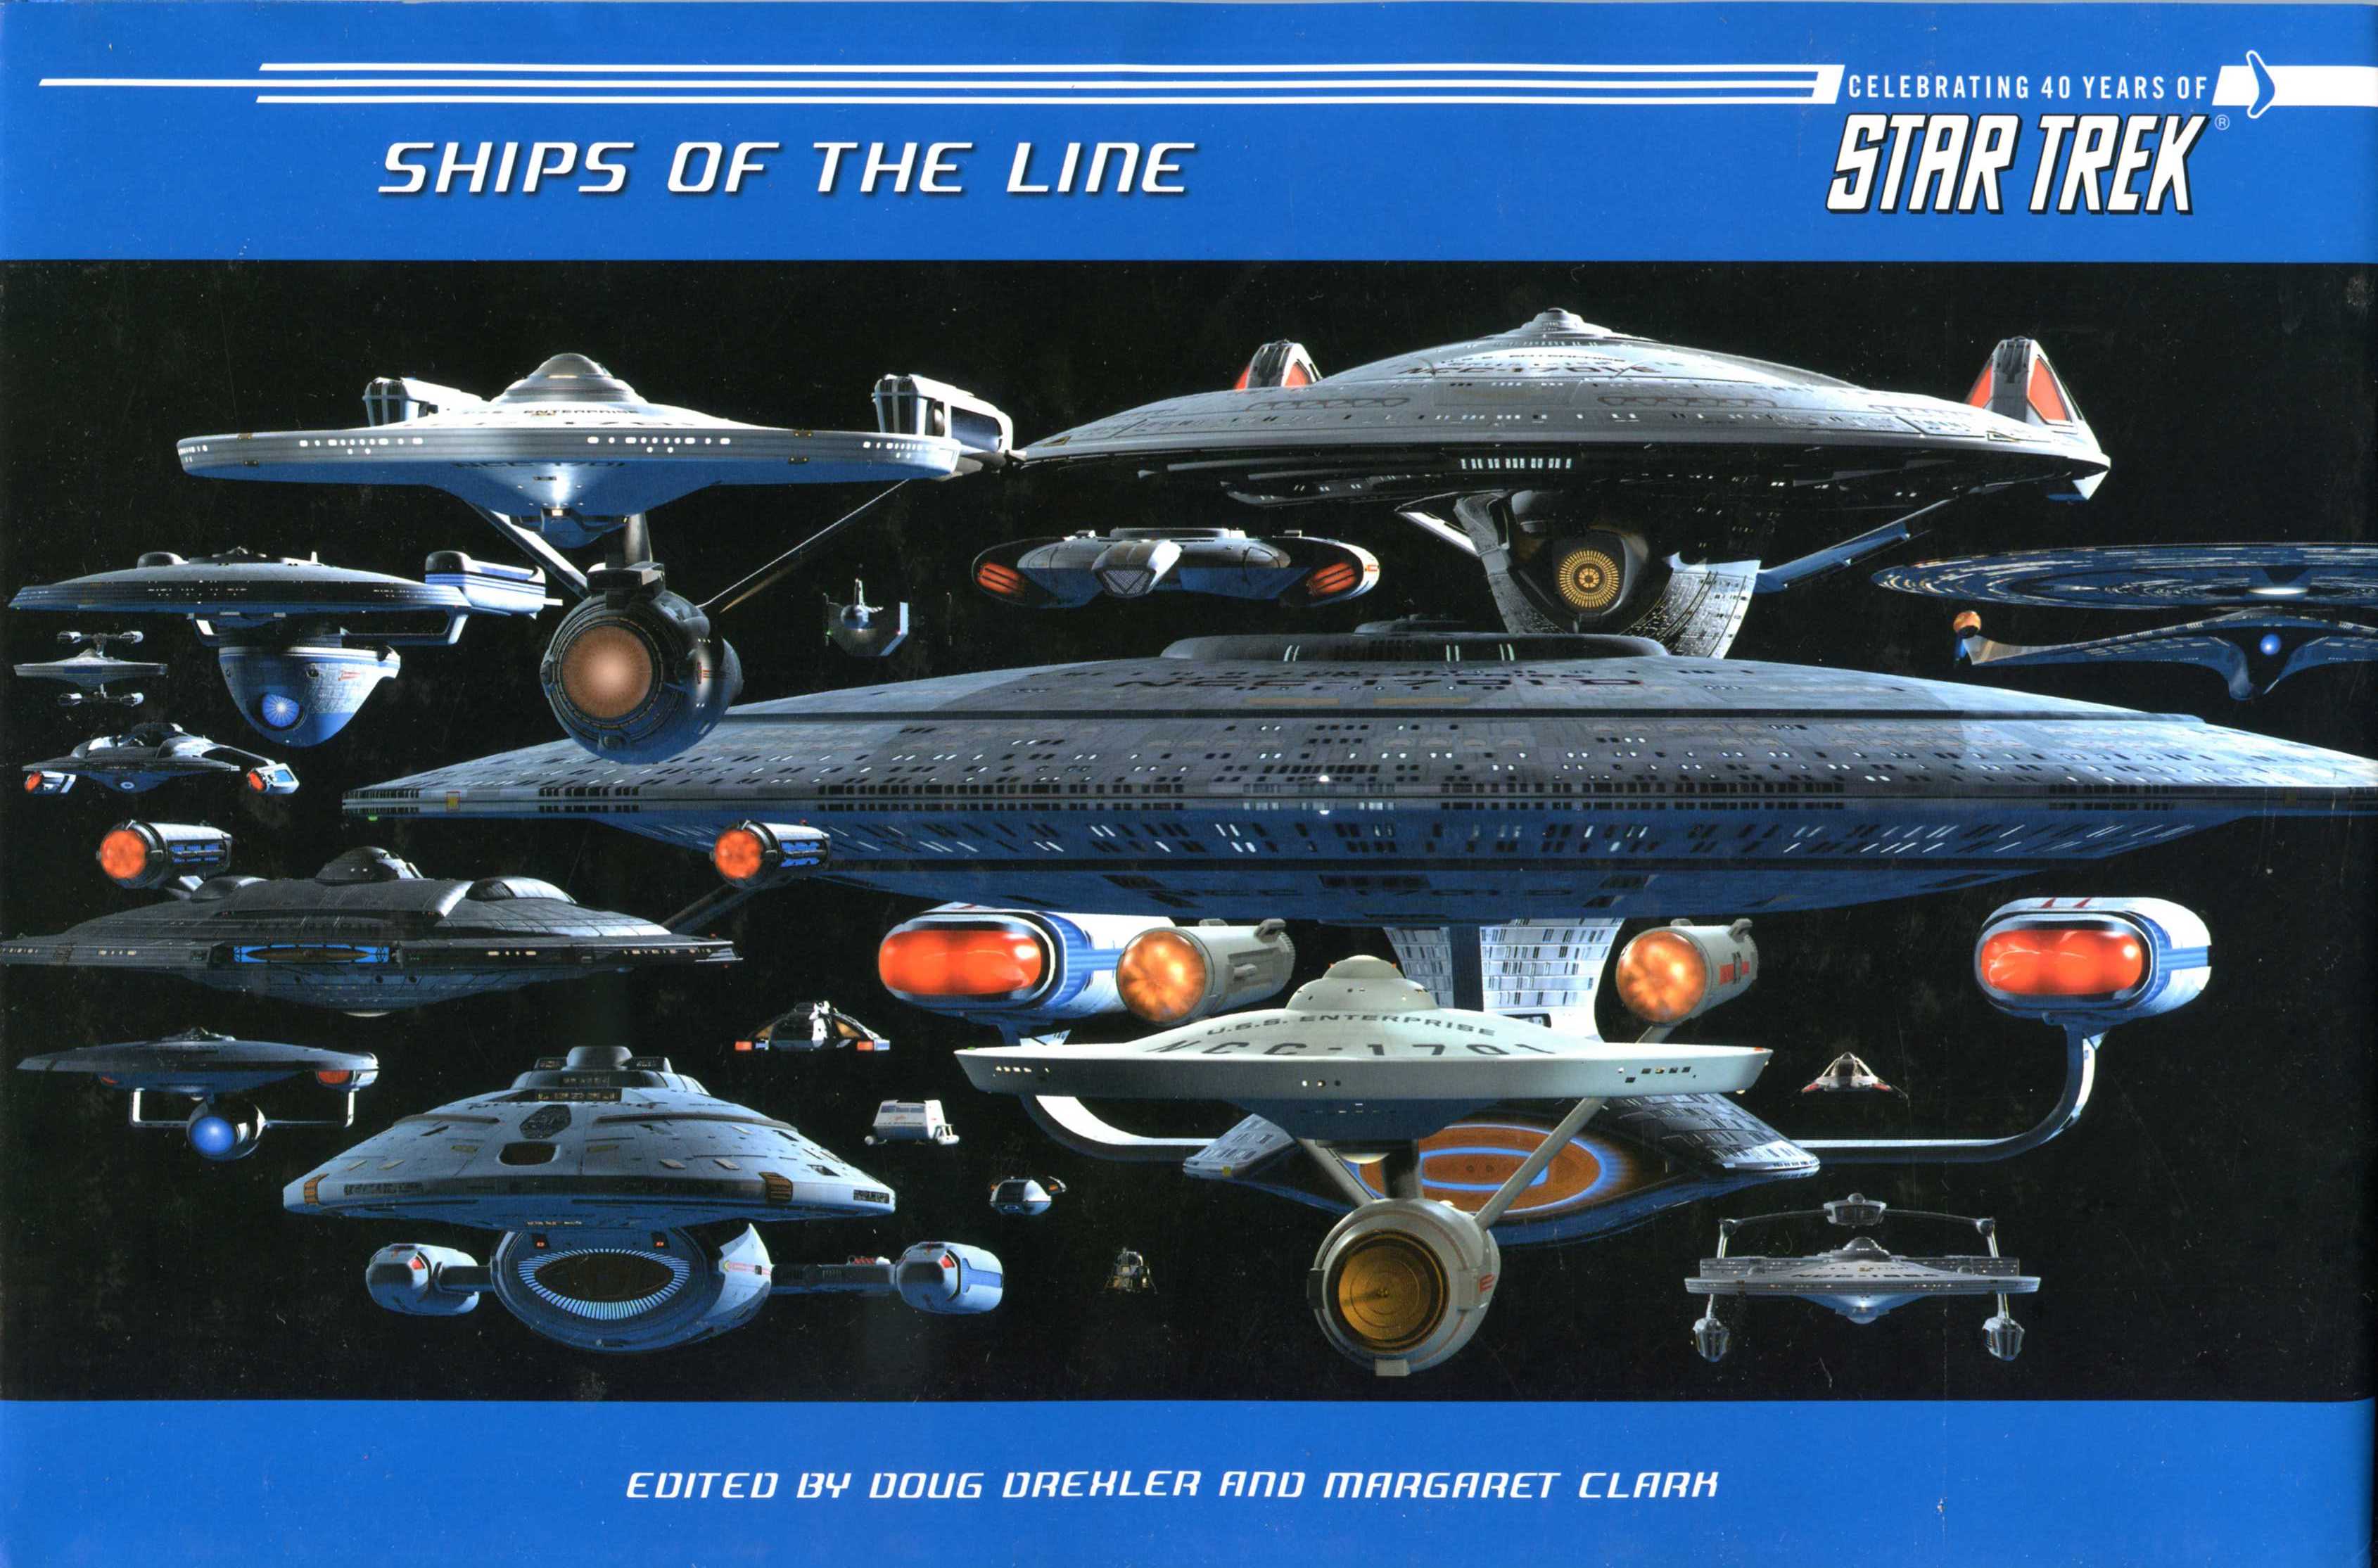 star-trek-ships-of-the-line-2021-calendar-kalendarze-filmowe-i-muzyczne-zagraniczne-kalendarze